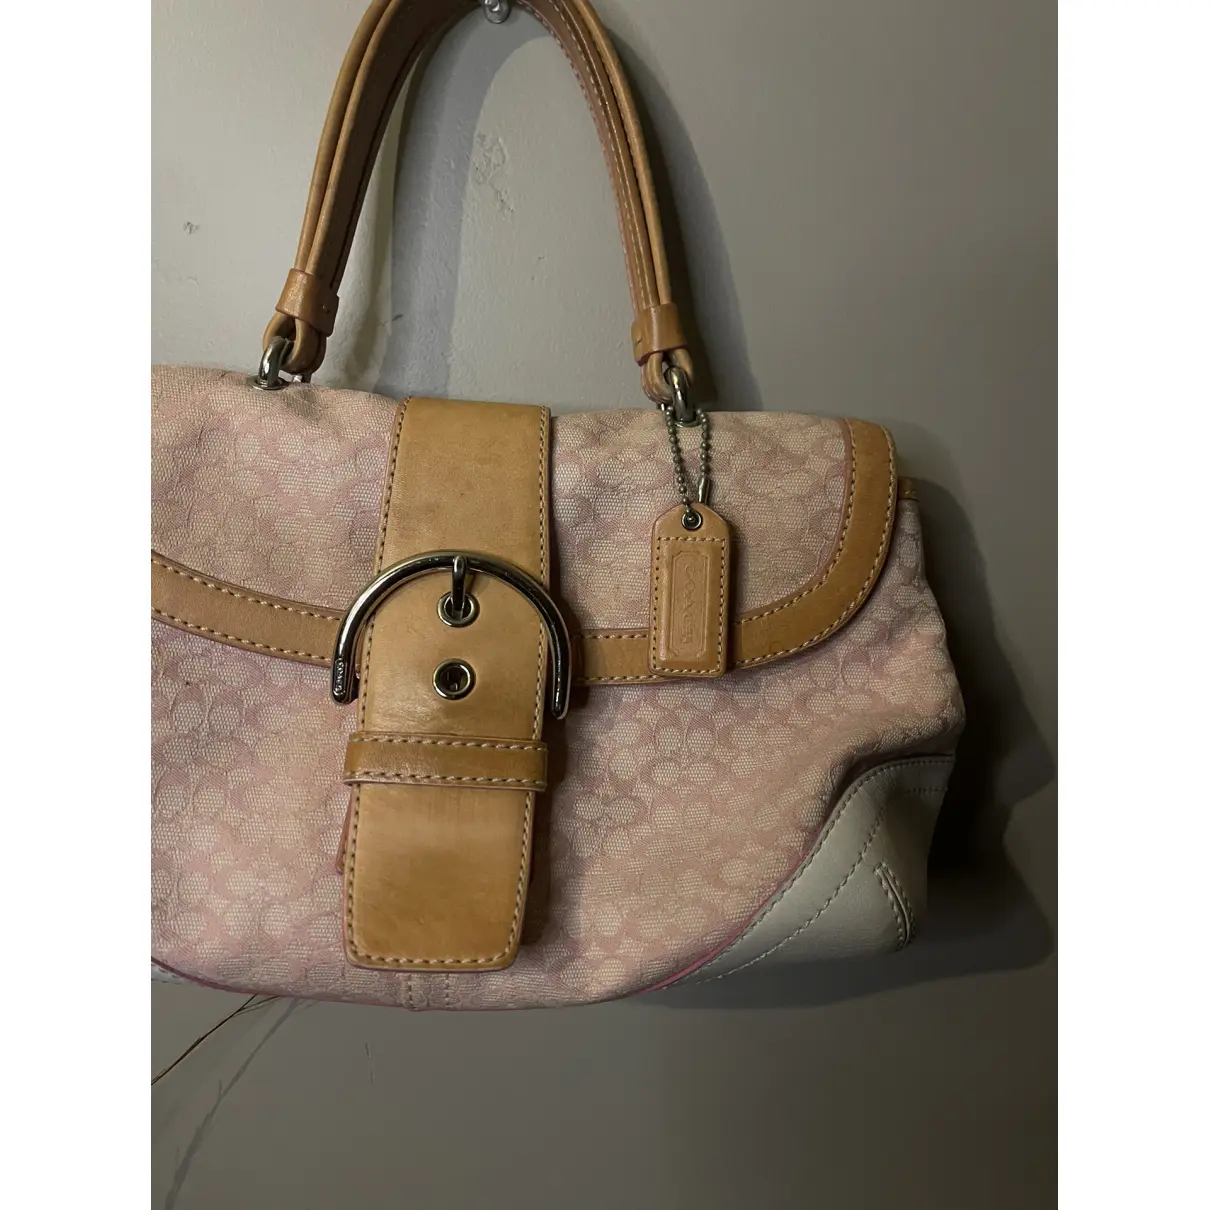 Buy Coach Hamilton Hobo cloth handbag online